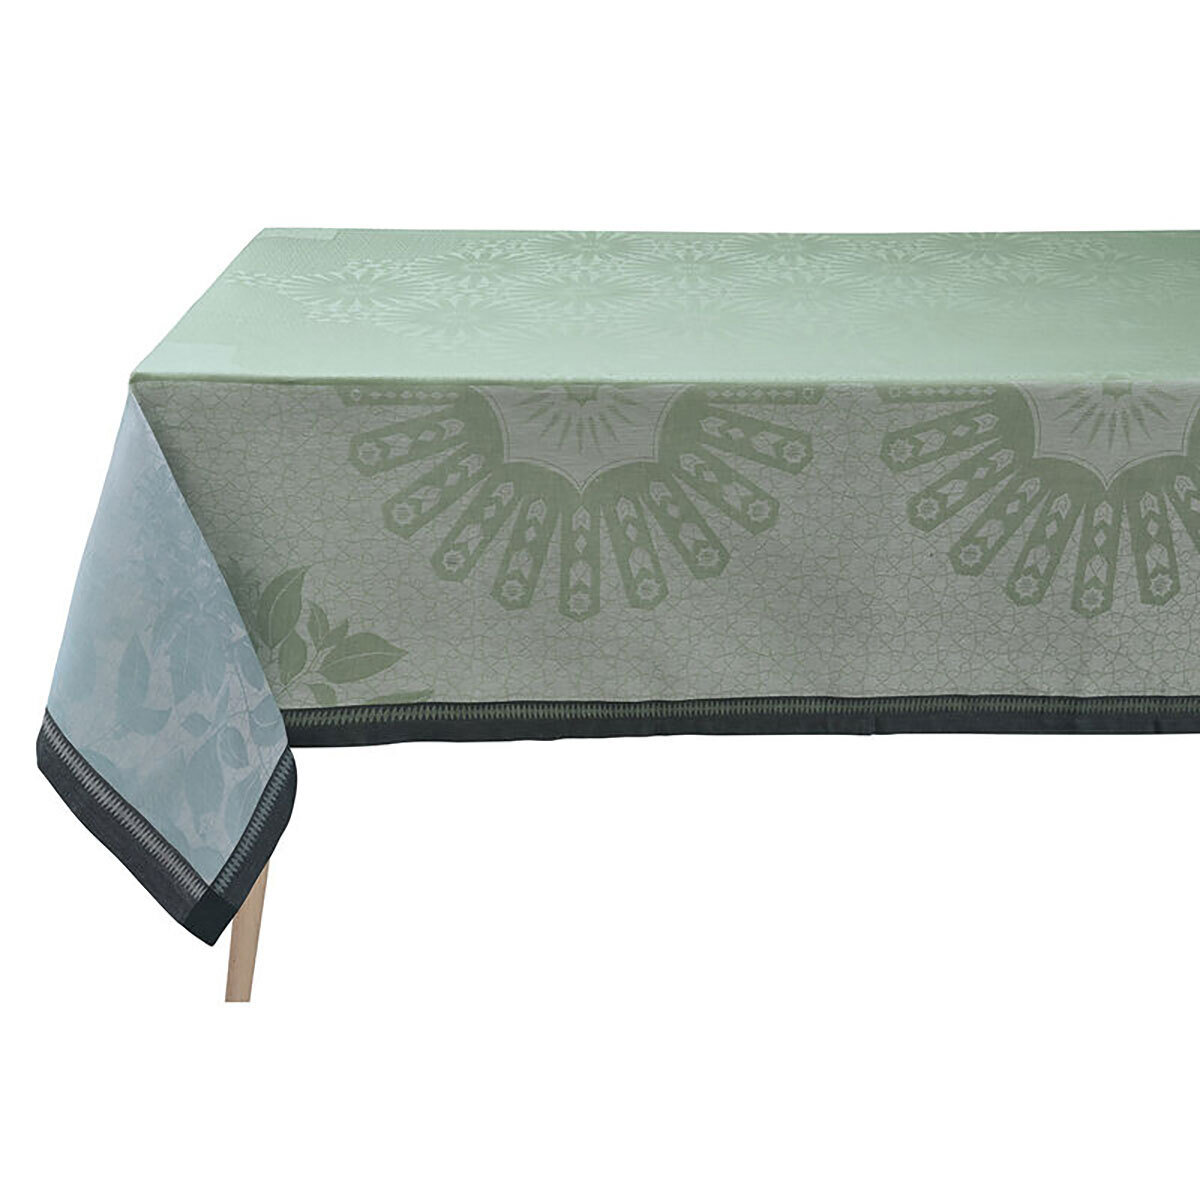 Le Jacquard Francais Jardin D'Orient Light Green Tablecloth 86 x 149 Inch 27502